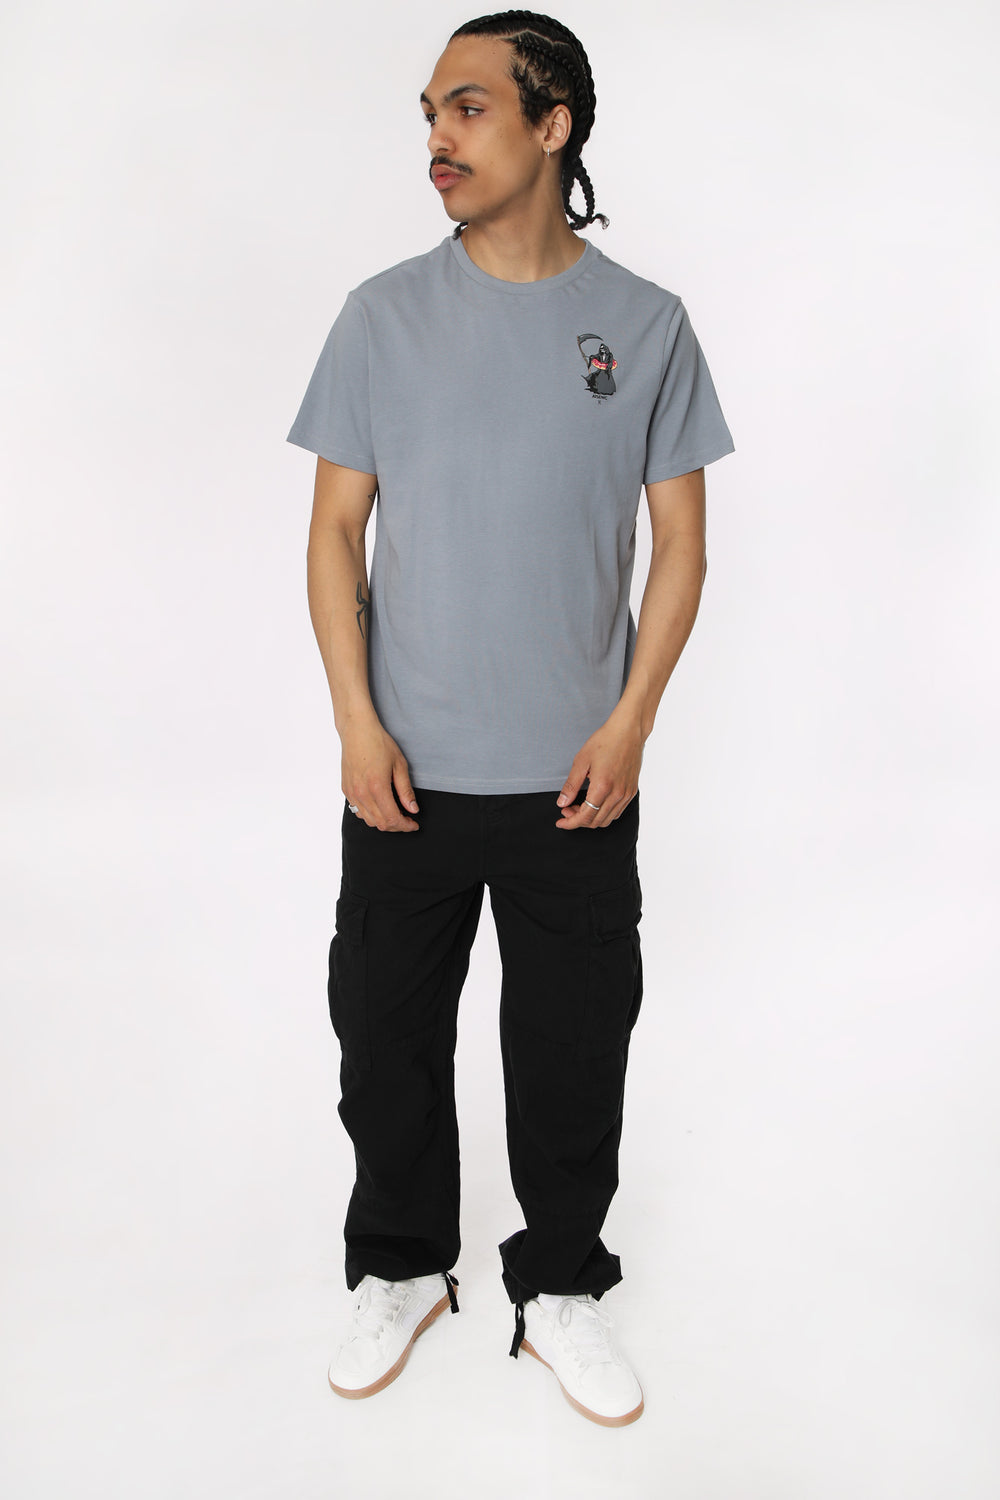 T-Shirt Imprimé Lifeguard Arsenic Homme T-Shirt Imprimé Lifeguard Arsenic Homme